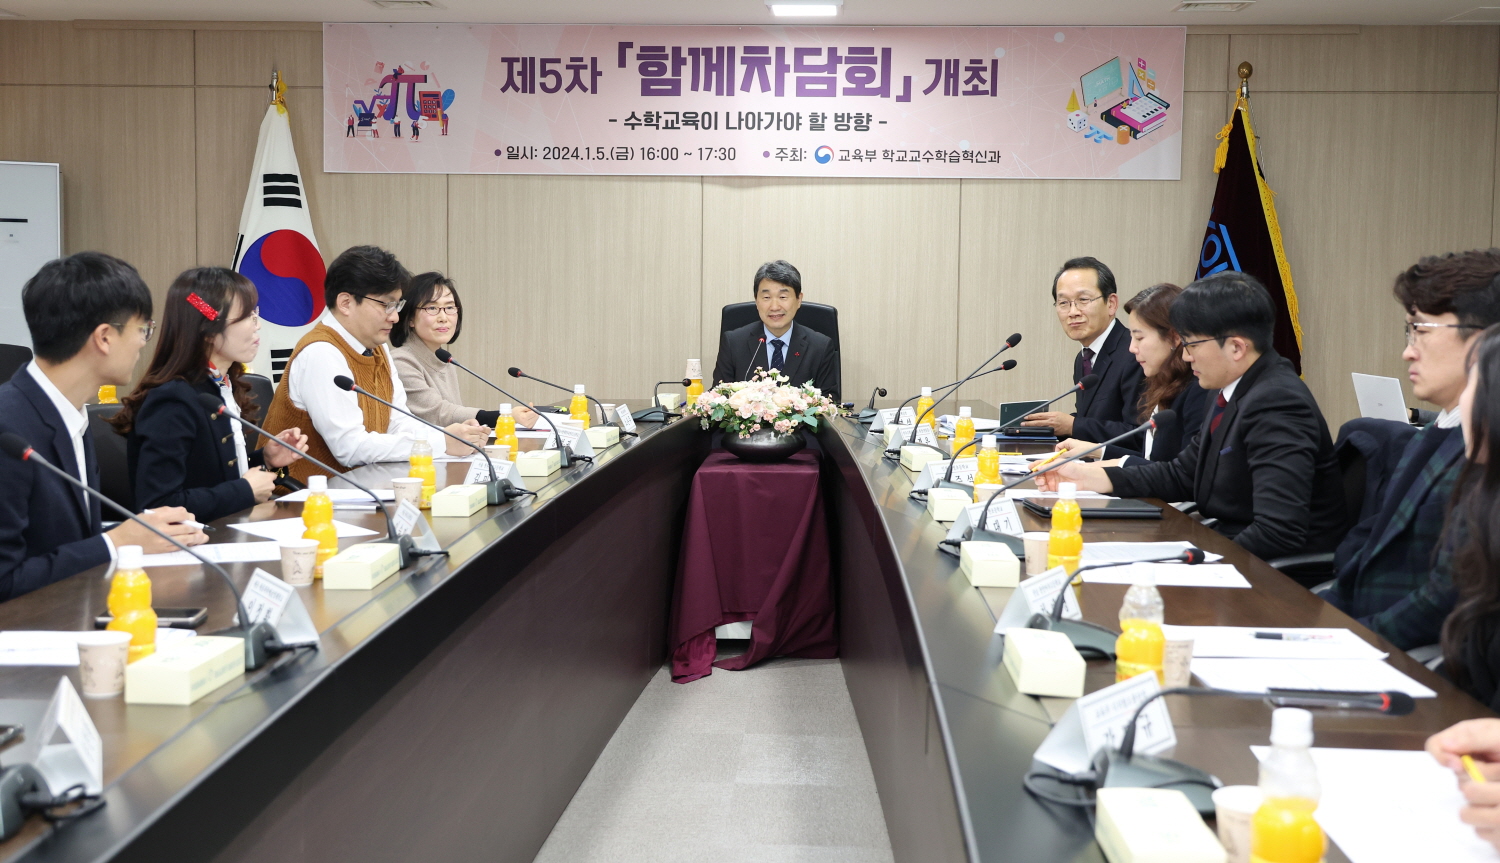 이주호 부총리 겸 교육부장관은 1월 5일(금), 한국교육시설안전원에서 「함께차담회」를 개최